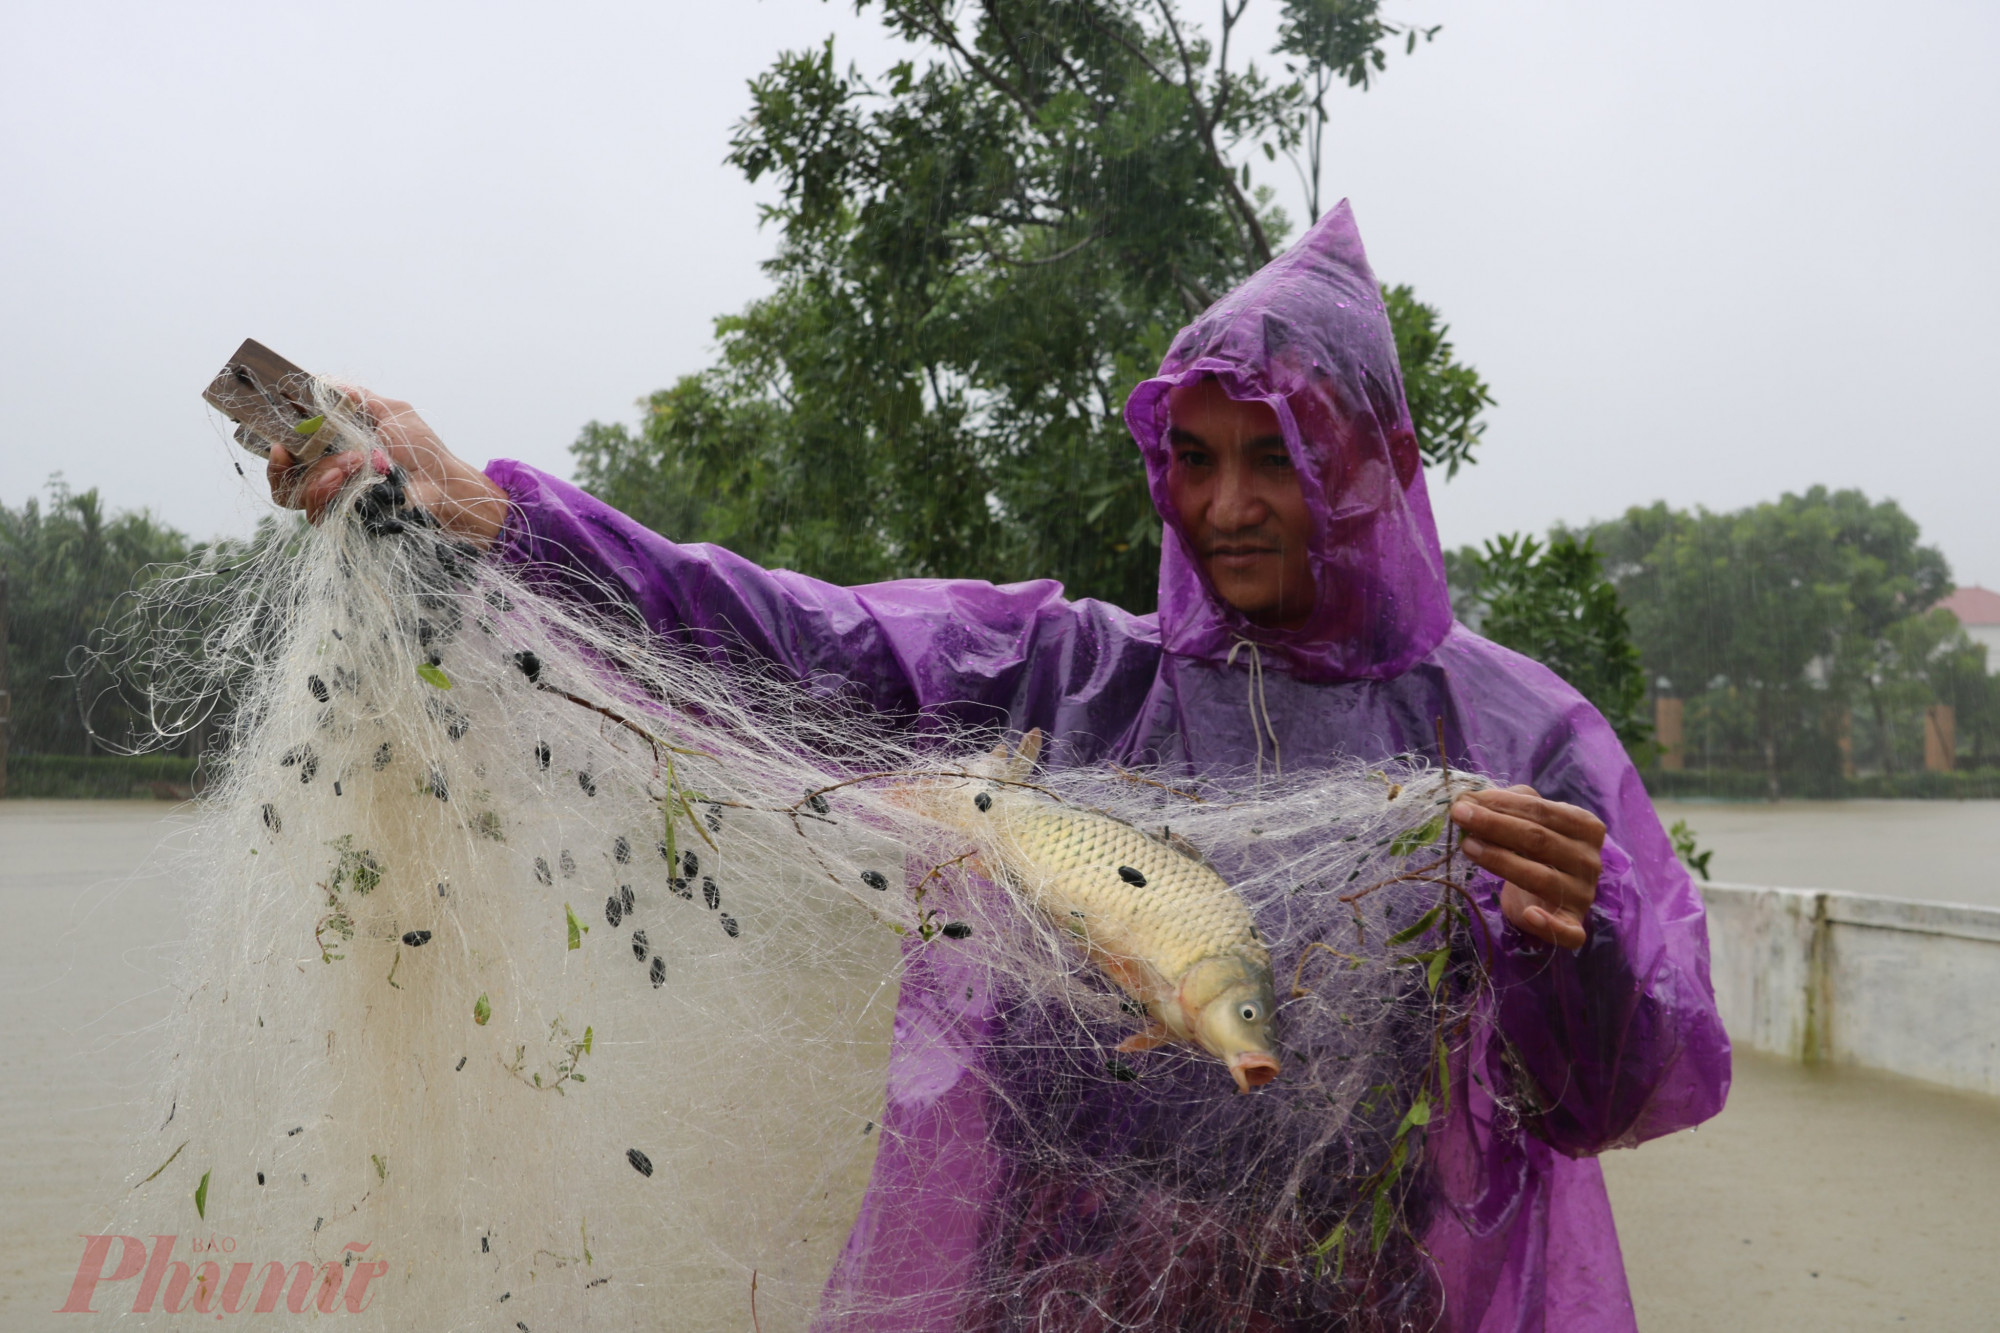 Tranh thủ nước lũ dâng cao, nhiều người dân ở xã Cẩm Vịnh (huyện Cẩm Xuyên) còn mang lưới thả trên đường làng để bắt cá. Chỉ trong vài giờ, nhiều người đã bắt được cả chục kg cá từ sông, ao cá theo dòng nước lũ thoát ra ngoài.